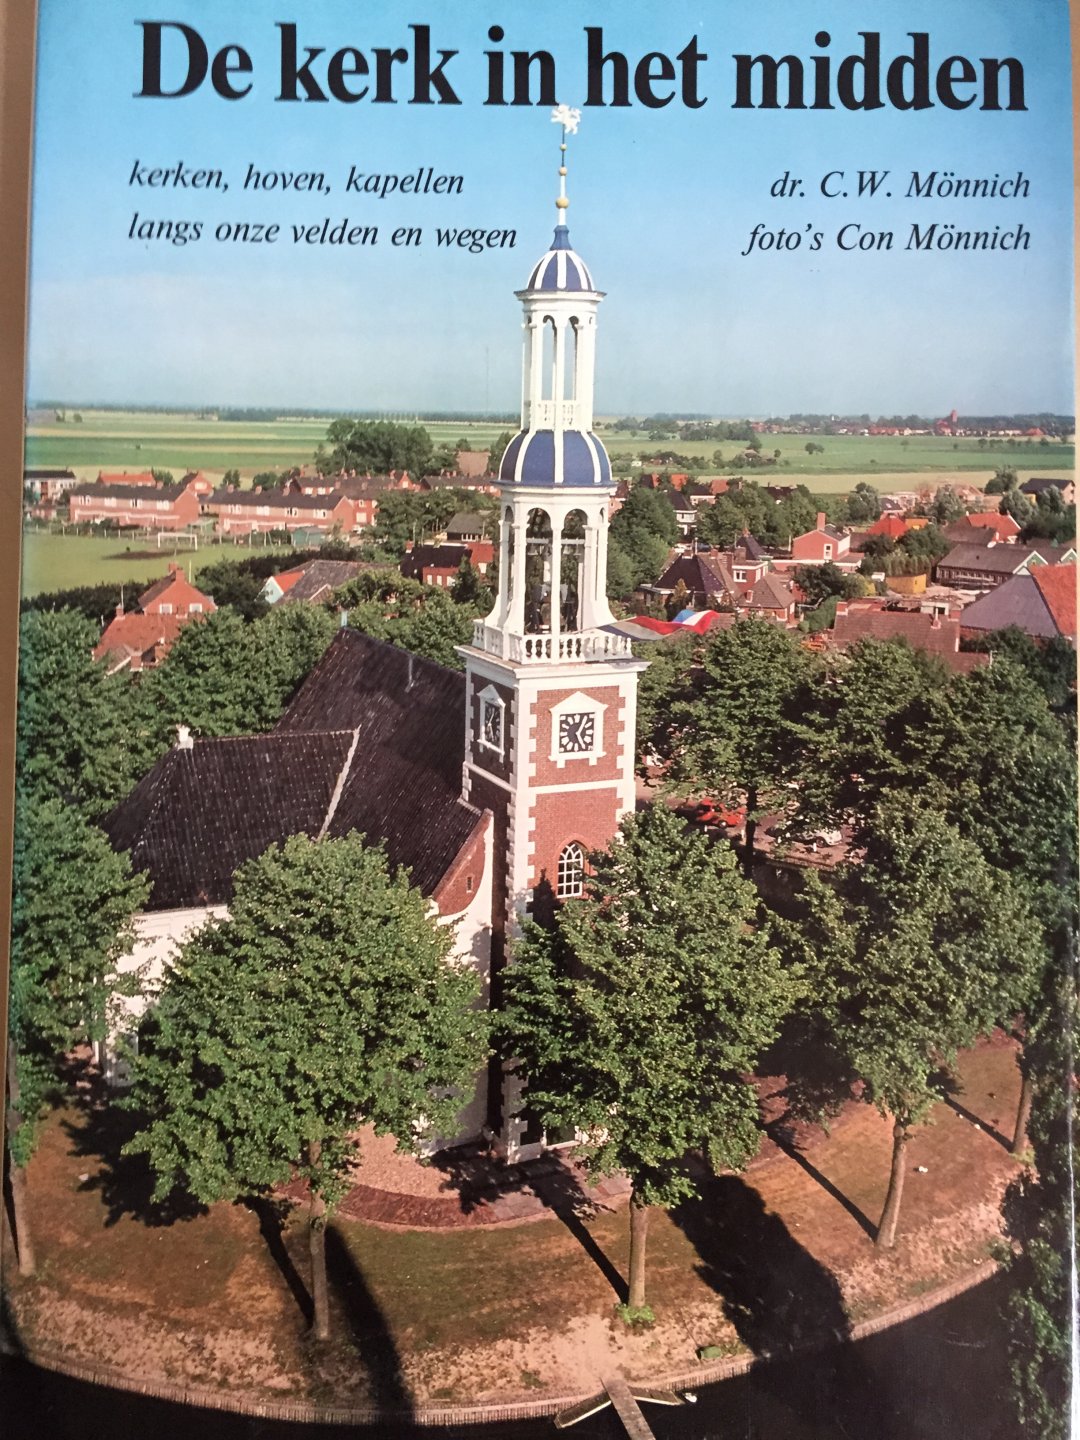 Mönnich, Prof. Dr. C.W. en Con Mönnich (foto's) - De kerk in het midden; kerken, hoven, kapellen langs onze velden en wegen